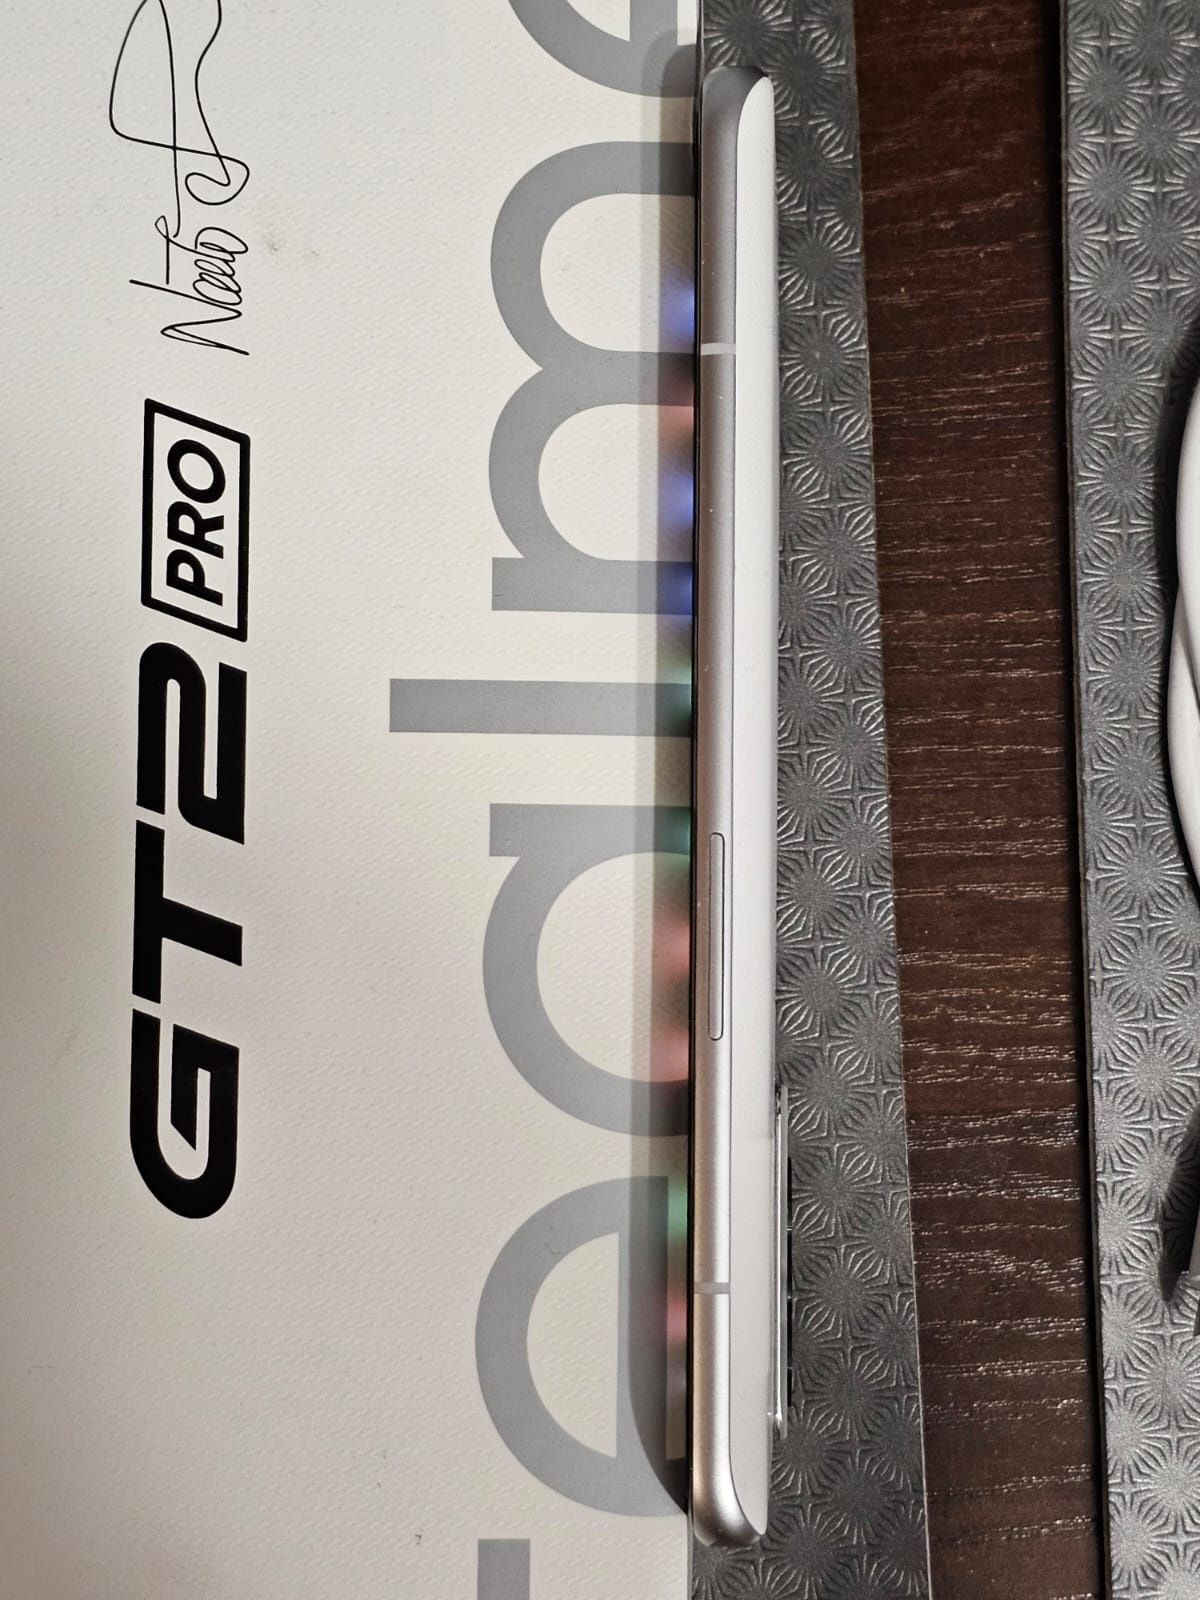 Realme GT2 Pro 8/128